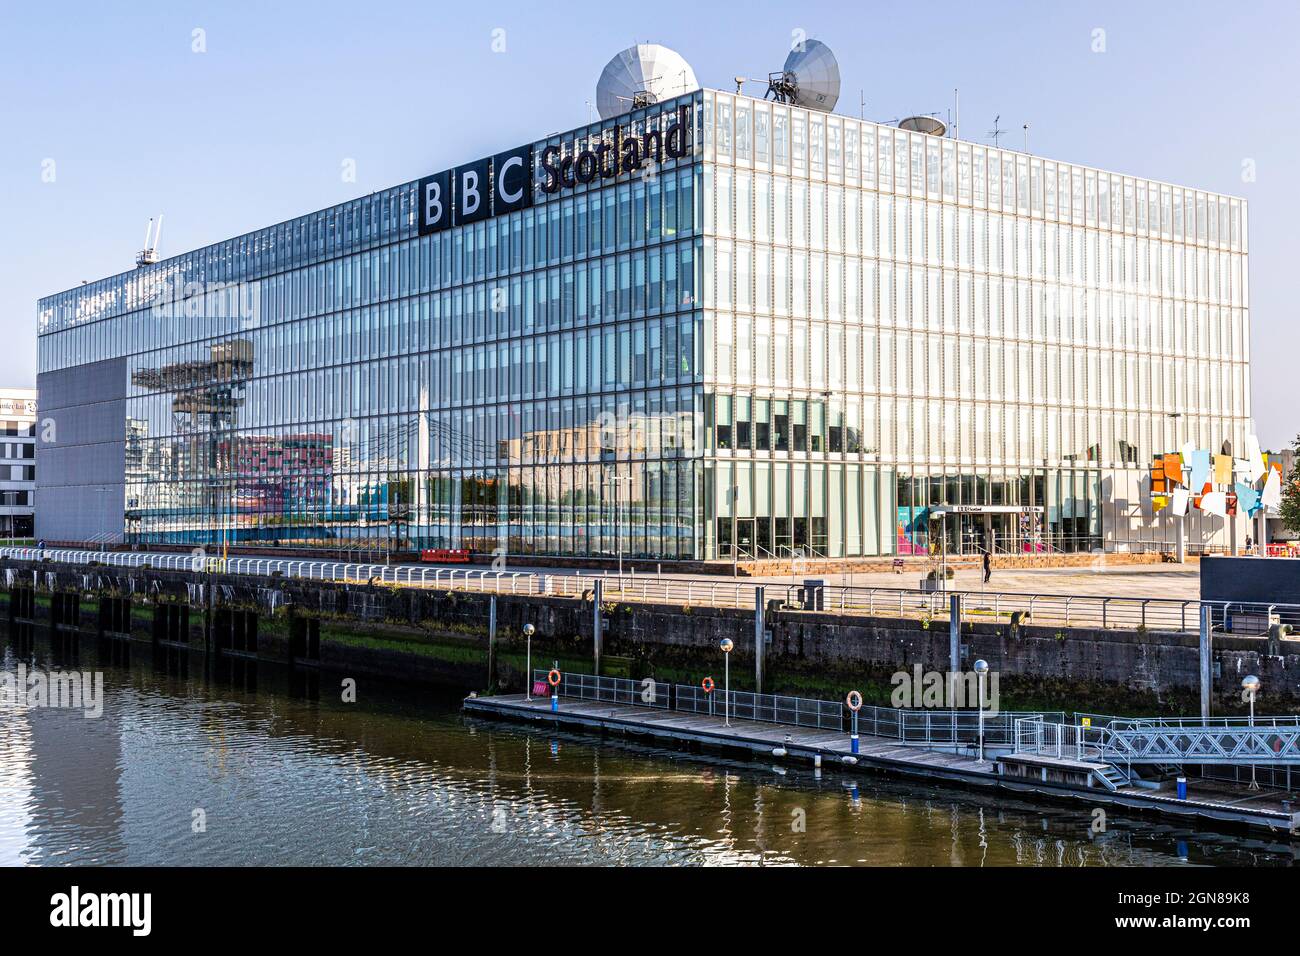 Le bâtiment BBC Scotland situé à côté de Bells Bridge, sur la rivière Clyde, à Glasgow, en Écosse, au Royaume-Uni Banque D'Images